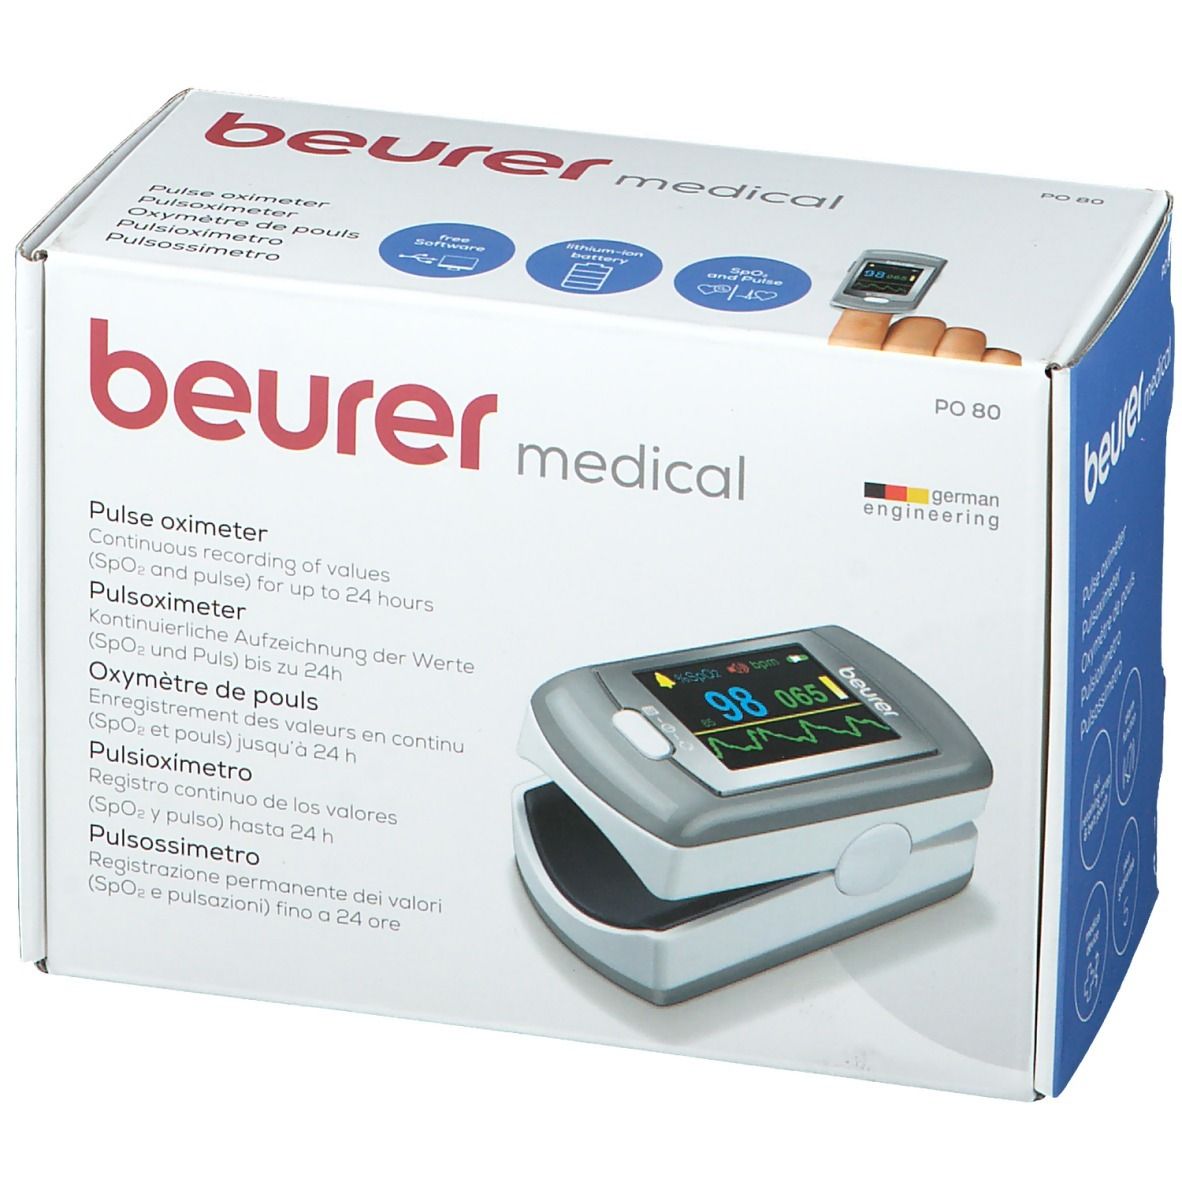 beurer PO 80 1 - shop-apotheke.com